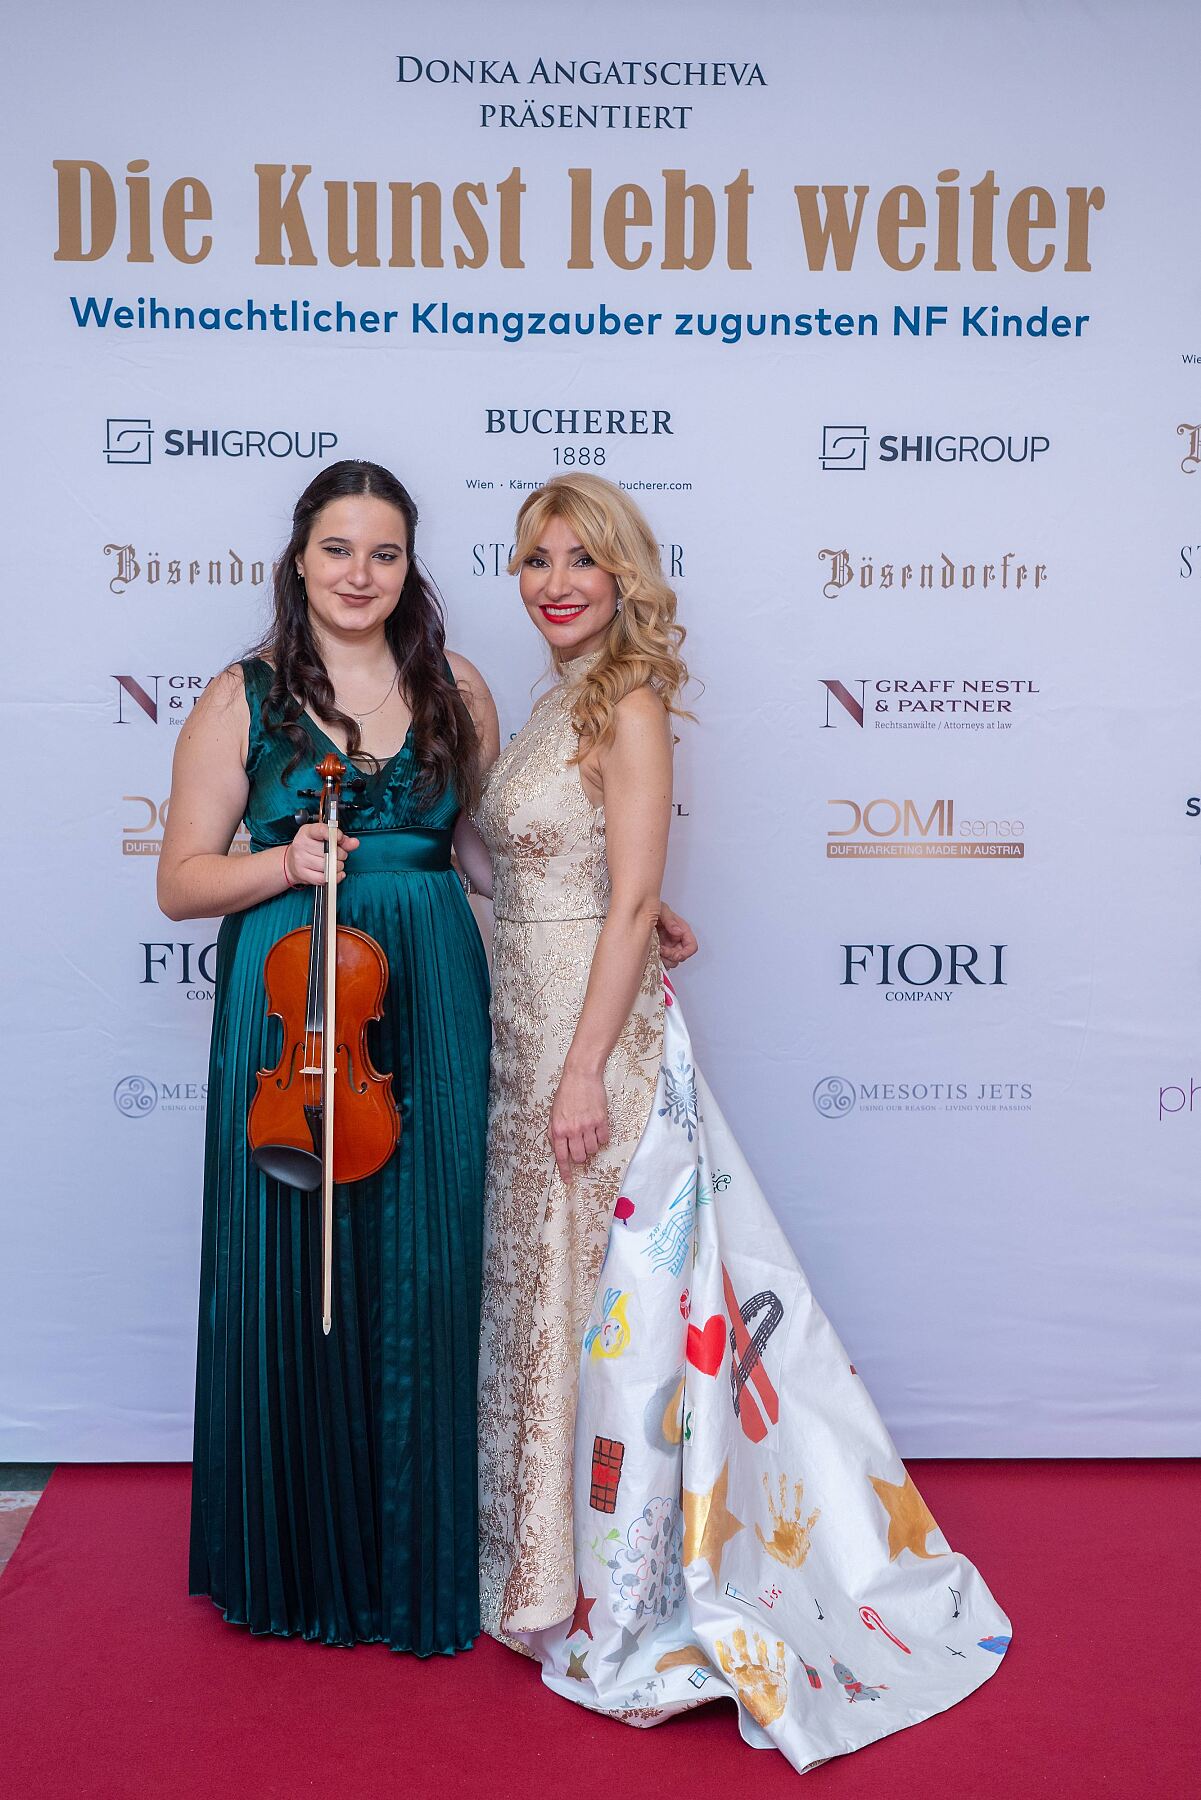 Chiara Nikolova und Donka Angatscheva